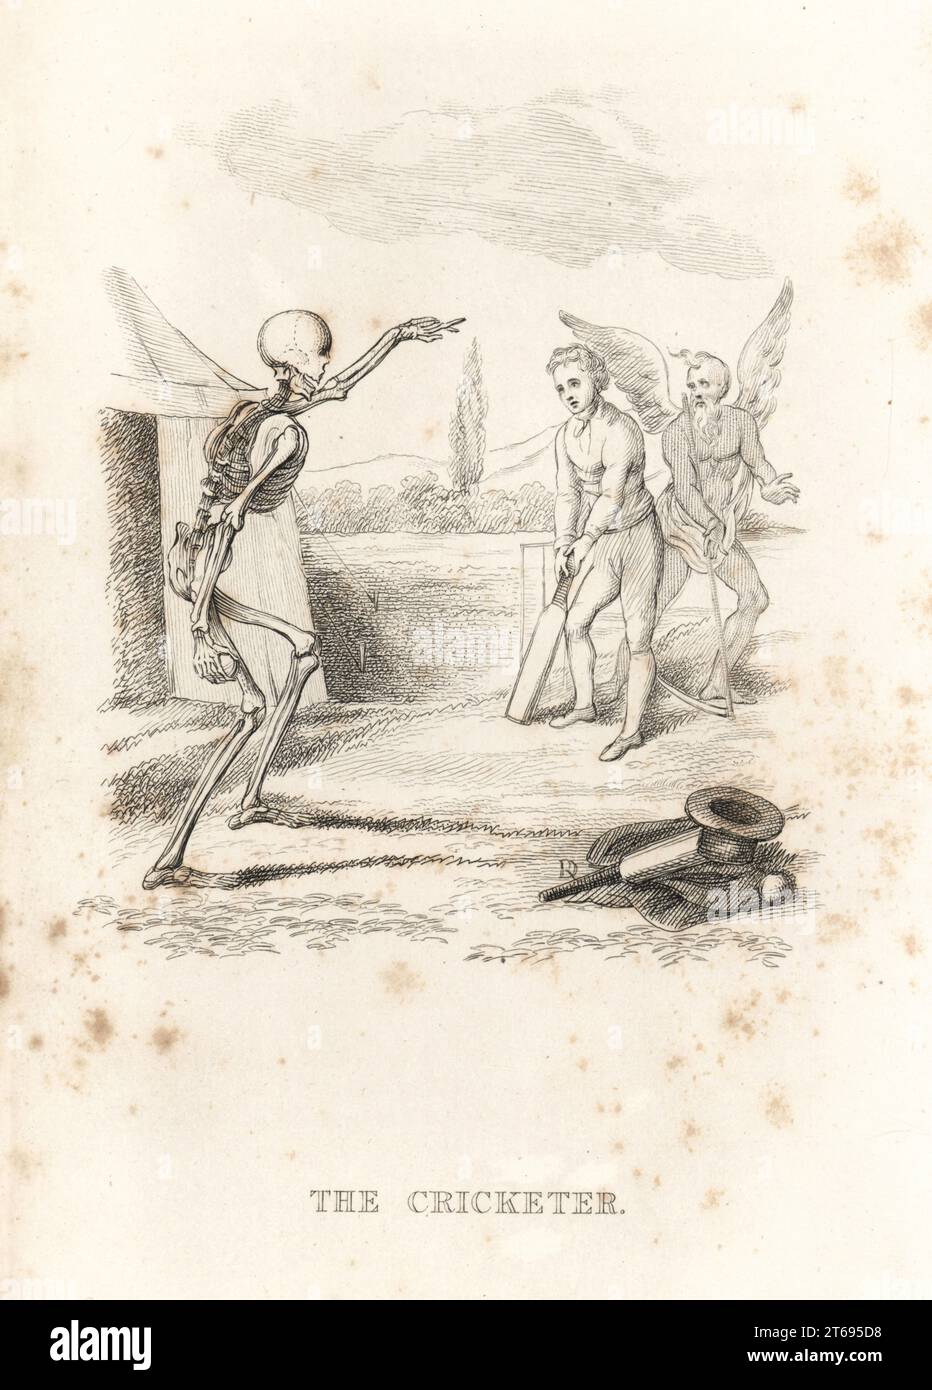 Lo scheletro della morte fa una palla a un cricket a pipistrello. Il guardiano del wicket è padre tempo con la sua falce. Un cappello, un cappotto, una mazza da cricket e una palla giacciono a terra. Illustrazione disegnata e incisa su acciaio da Richard Dagley dalle sue azioni di morte, consistenti in numerose composizioni originali in versi e prosa, J. Andrews, Londra, 1827. Dagley (1761-1841) è stato un pittore, illustratore e incisore inglese. Foto Stock